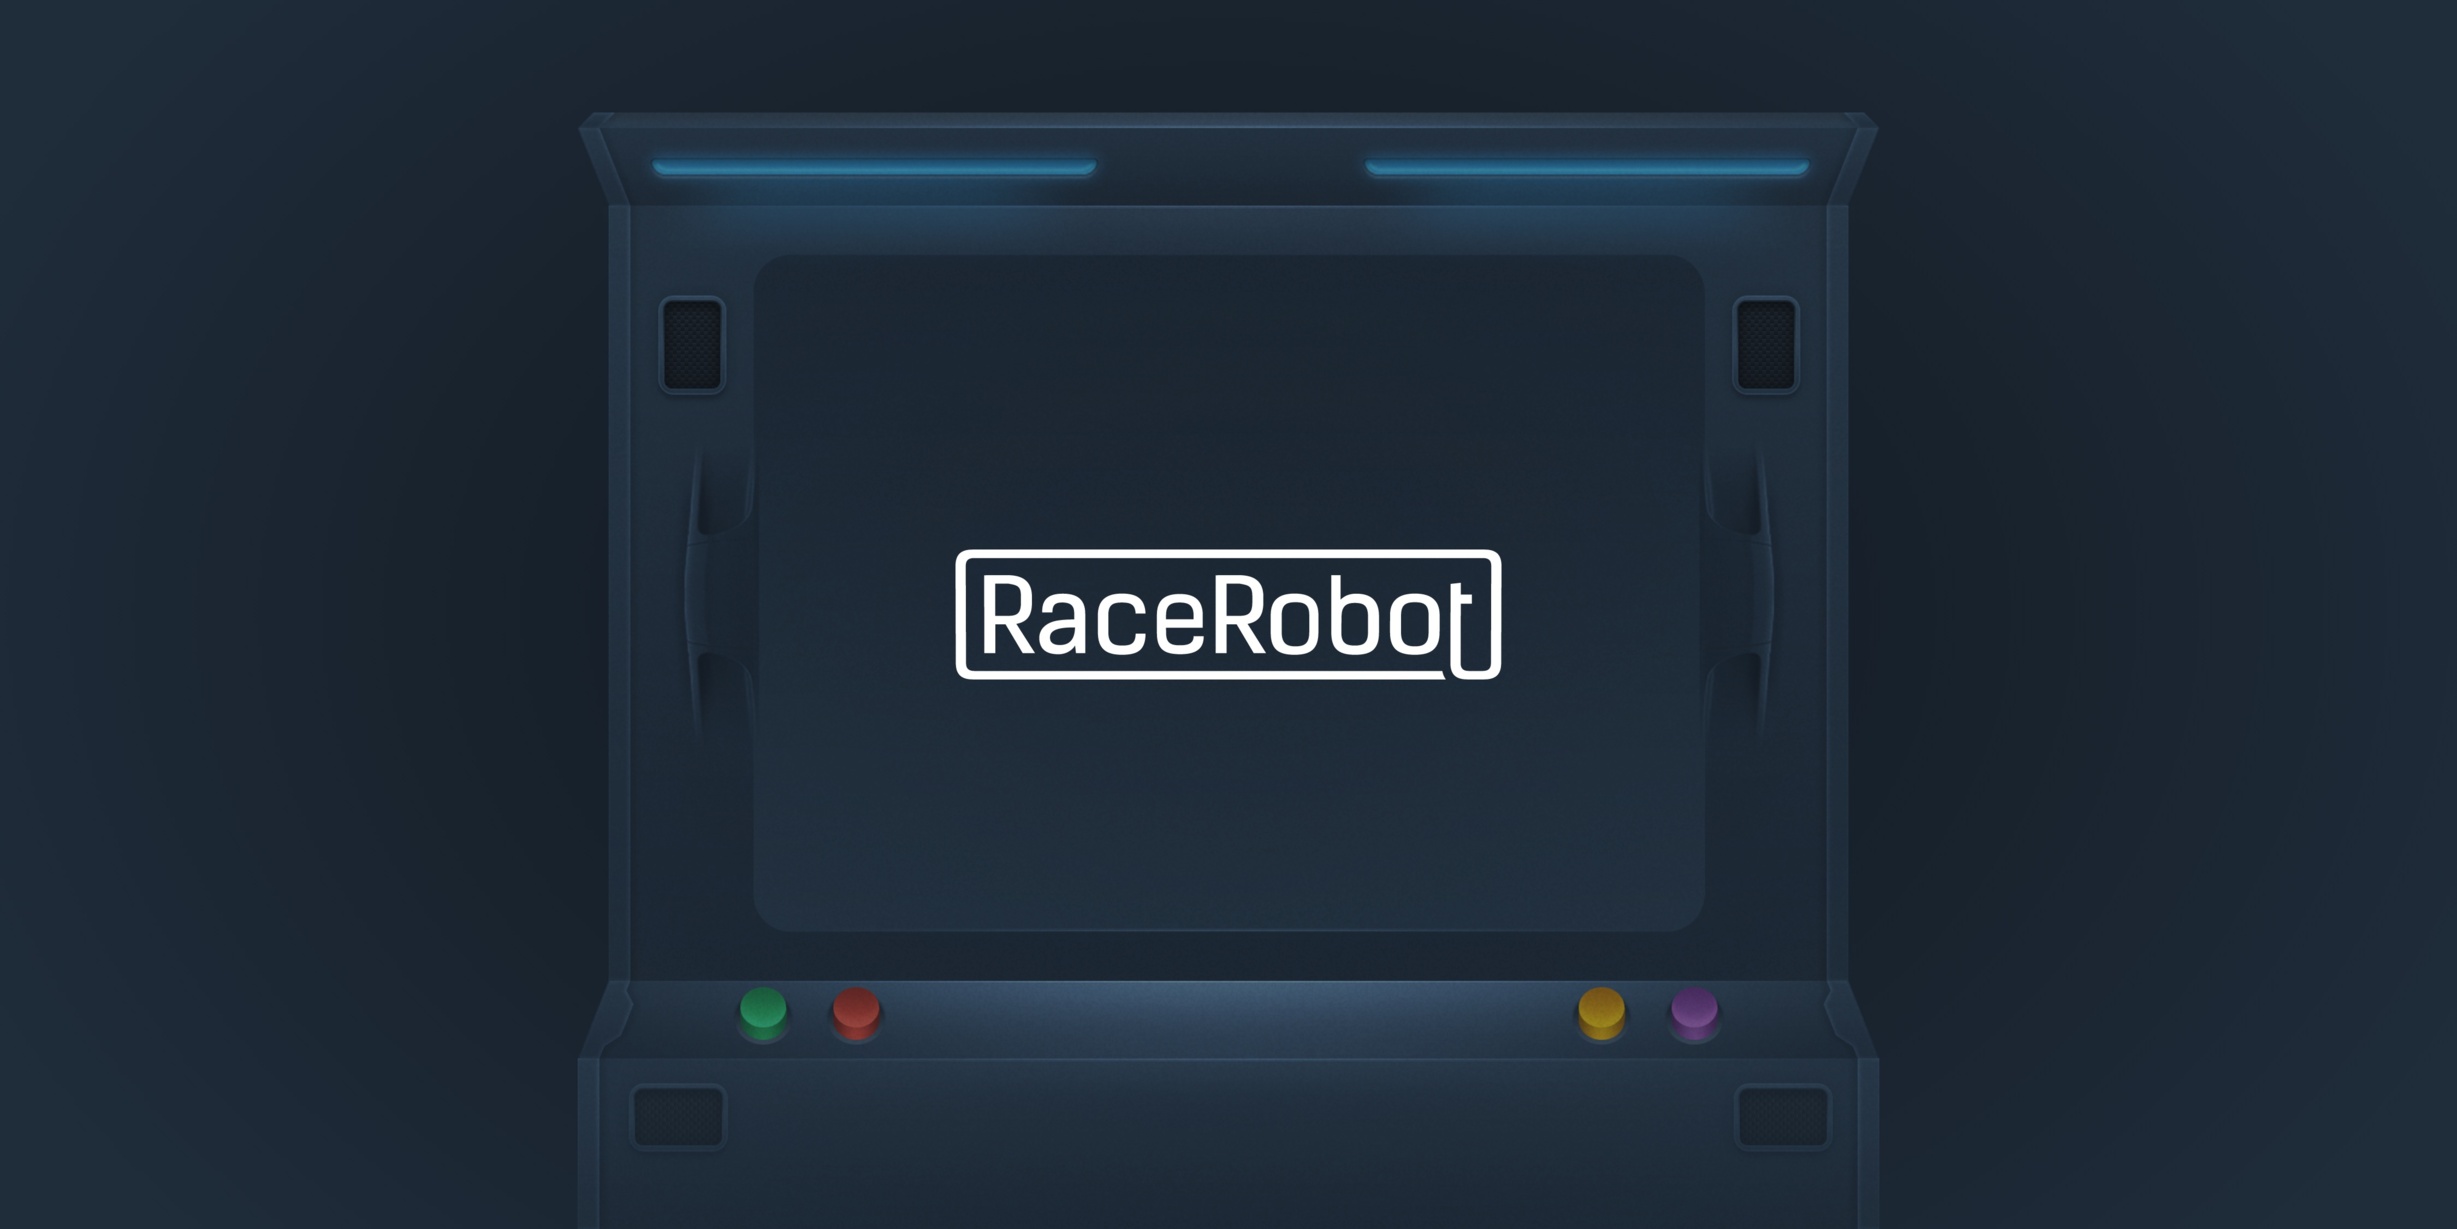 RaceRobot